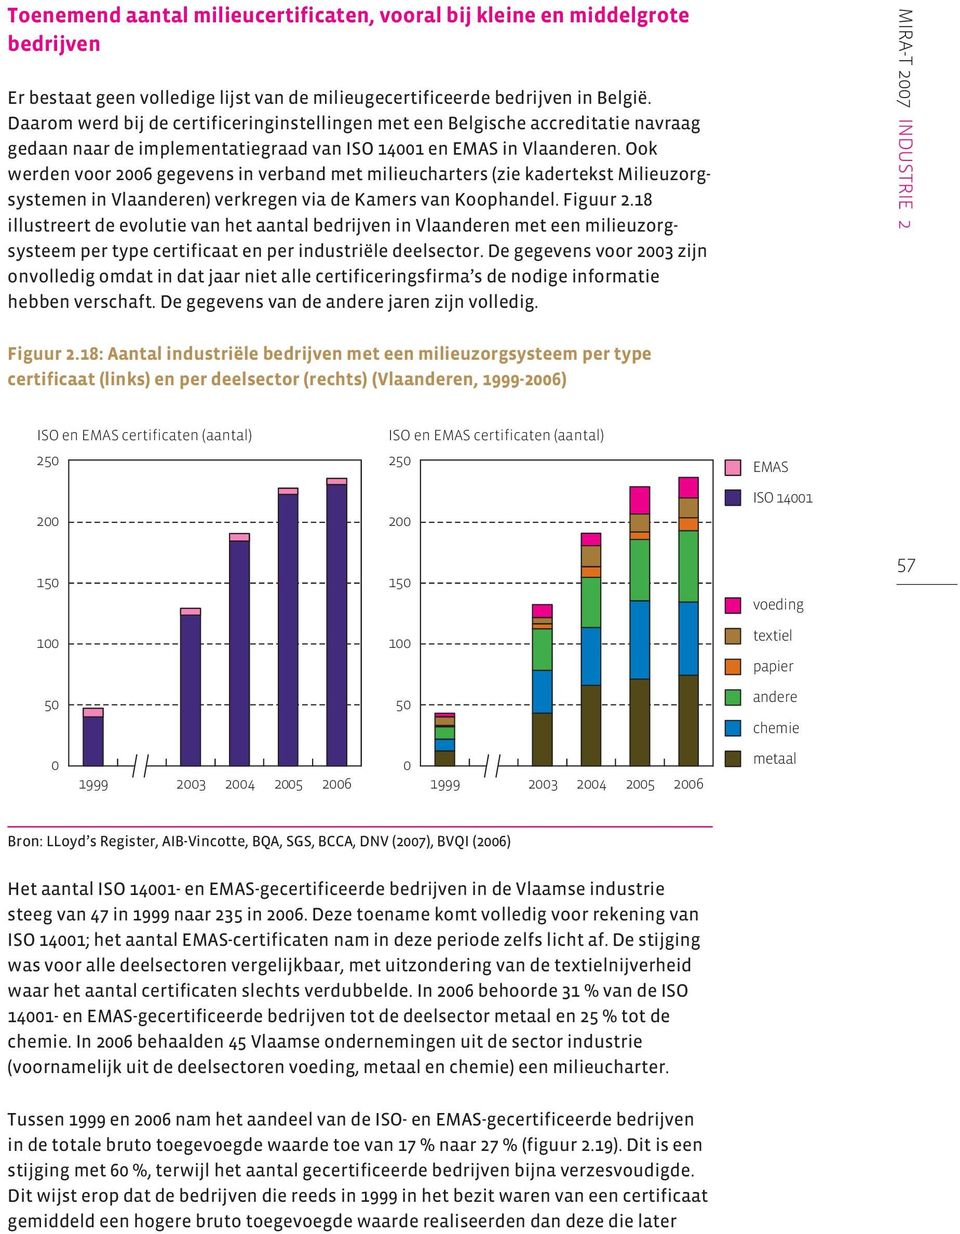 Ook werden voor 26 gegevens in verband met milieucharters (zie kadertekst Milieuzorgsystemen in Vlaanderen) verkregen via de Kamers van Koophandel. Figuur 2.